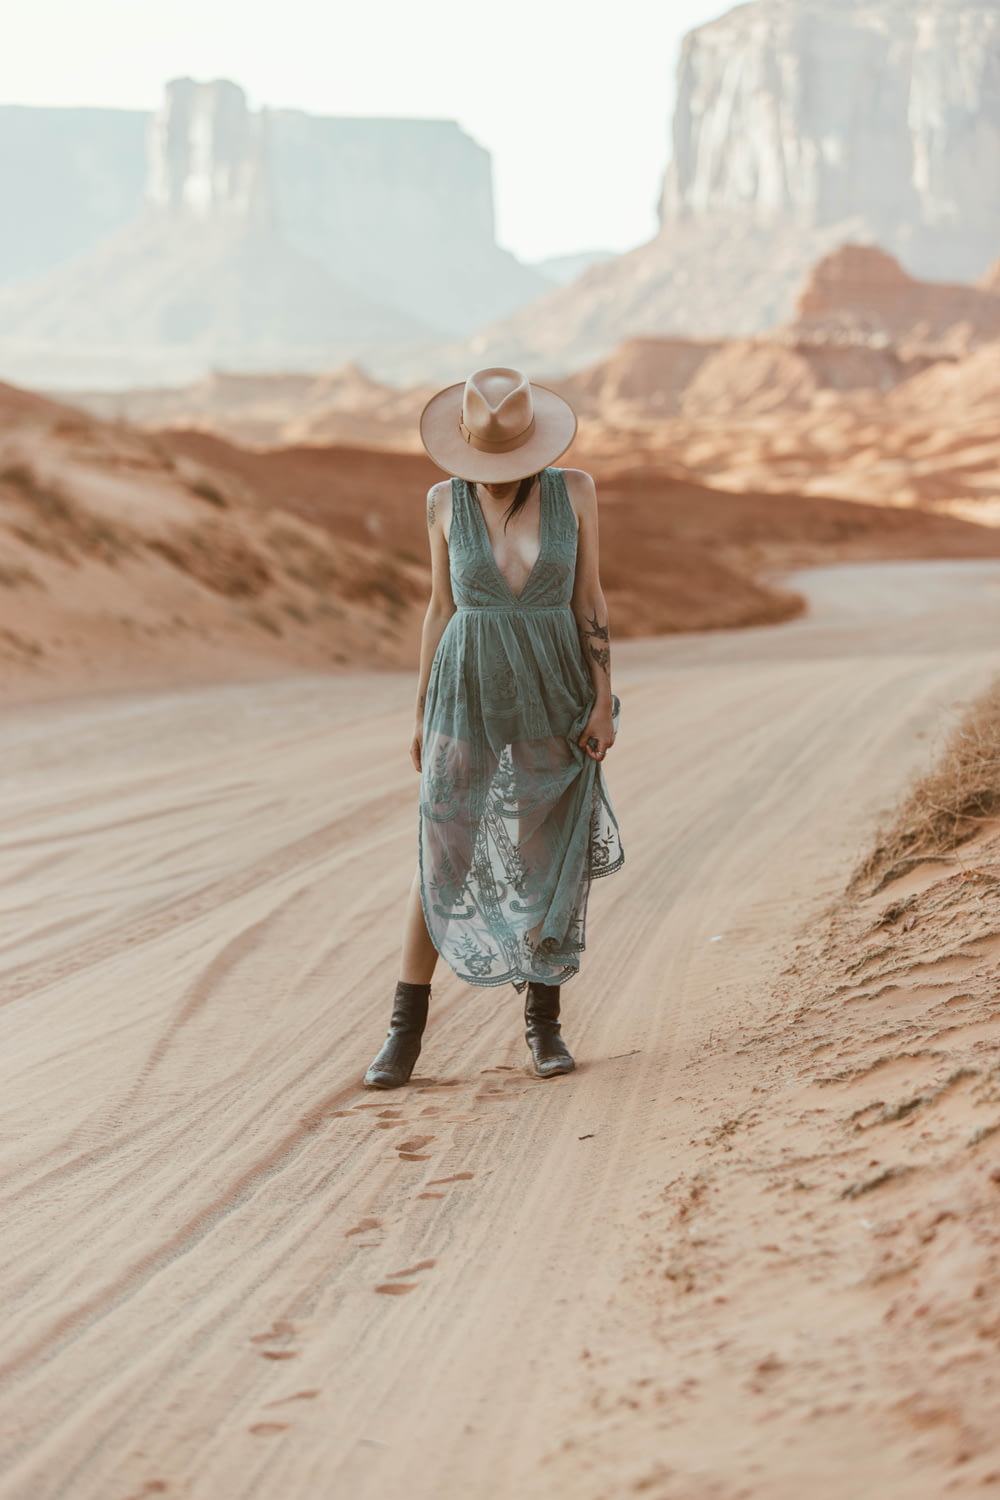 昼間、茶色の砂の上を歩く緑のタンクトップと青いスカートの女性